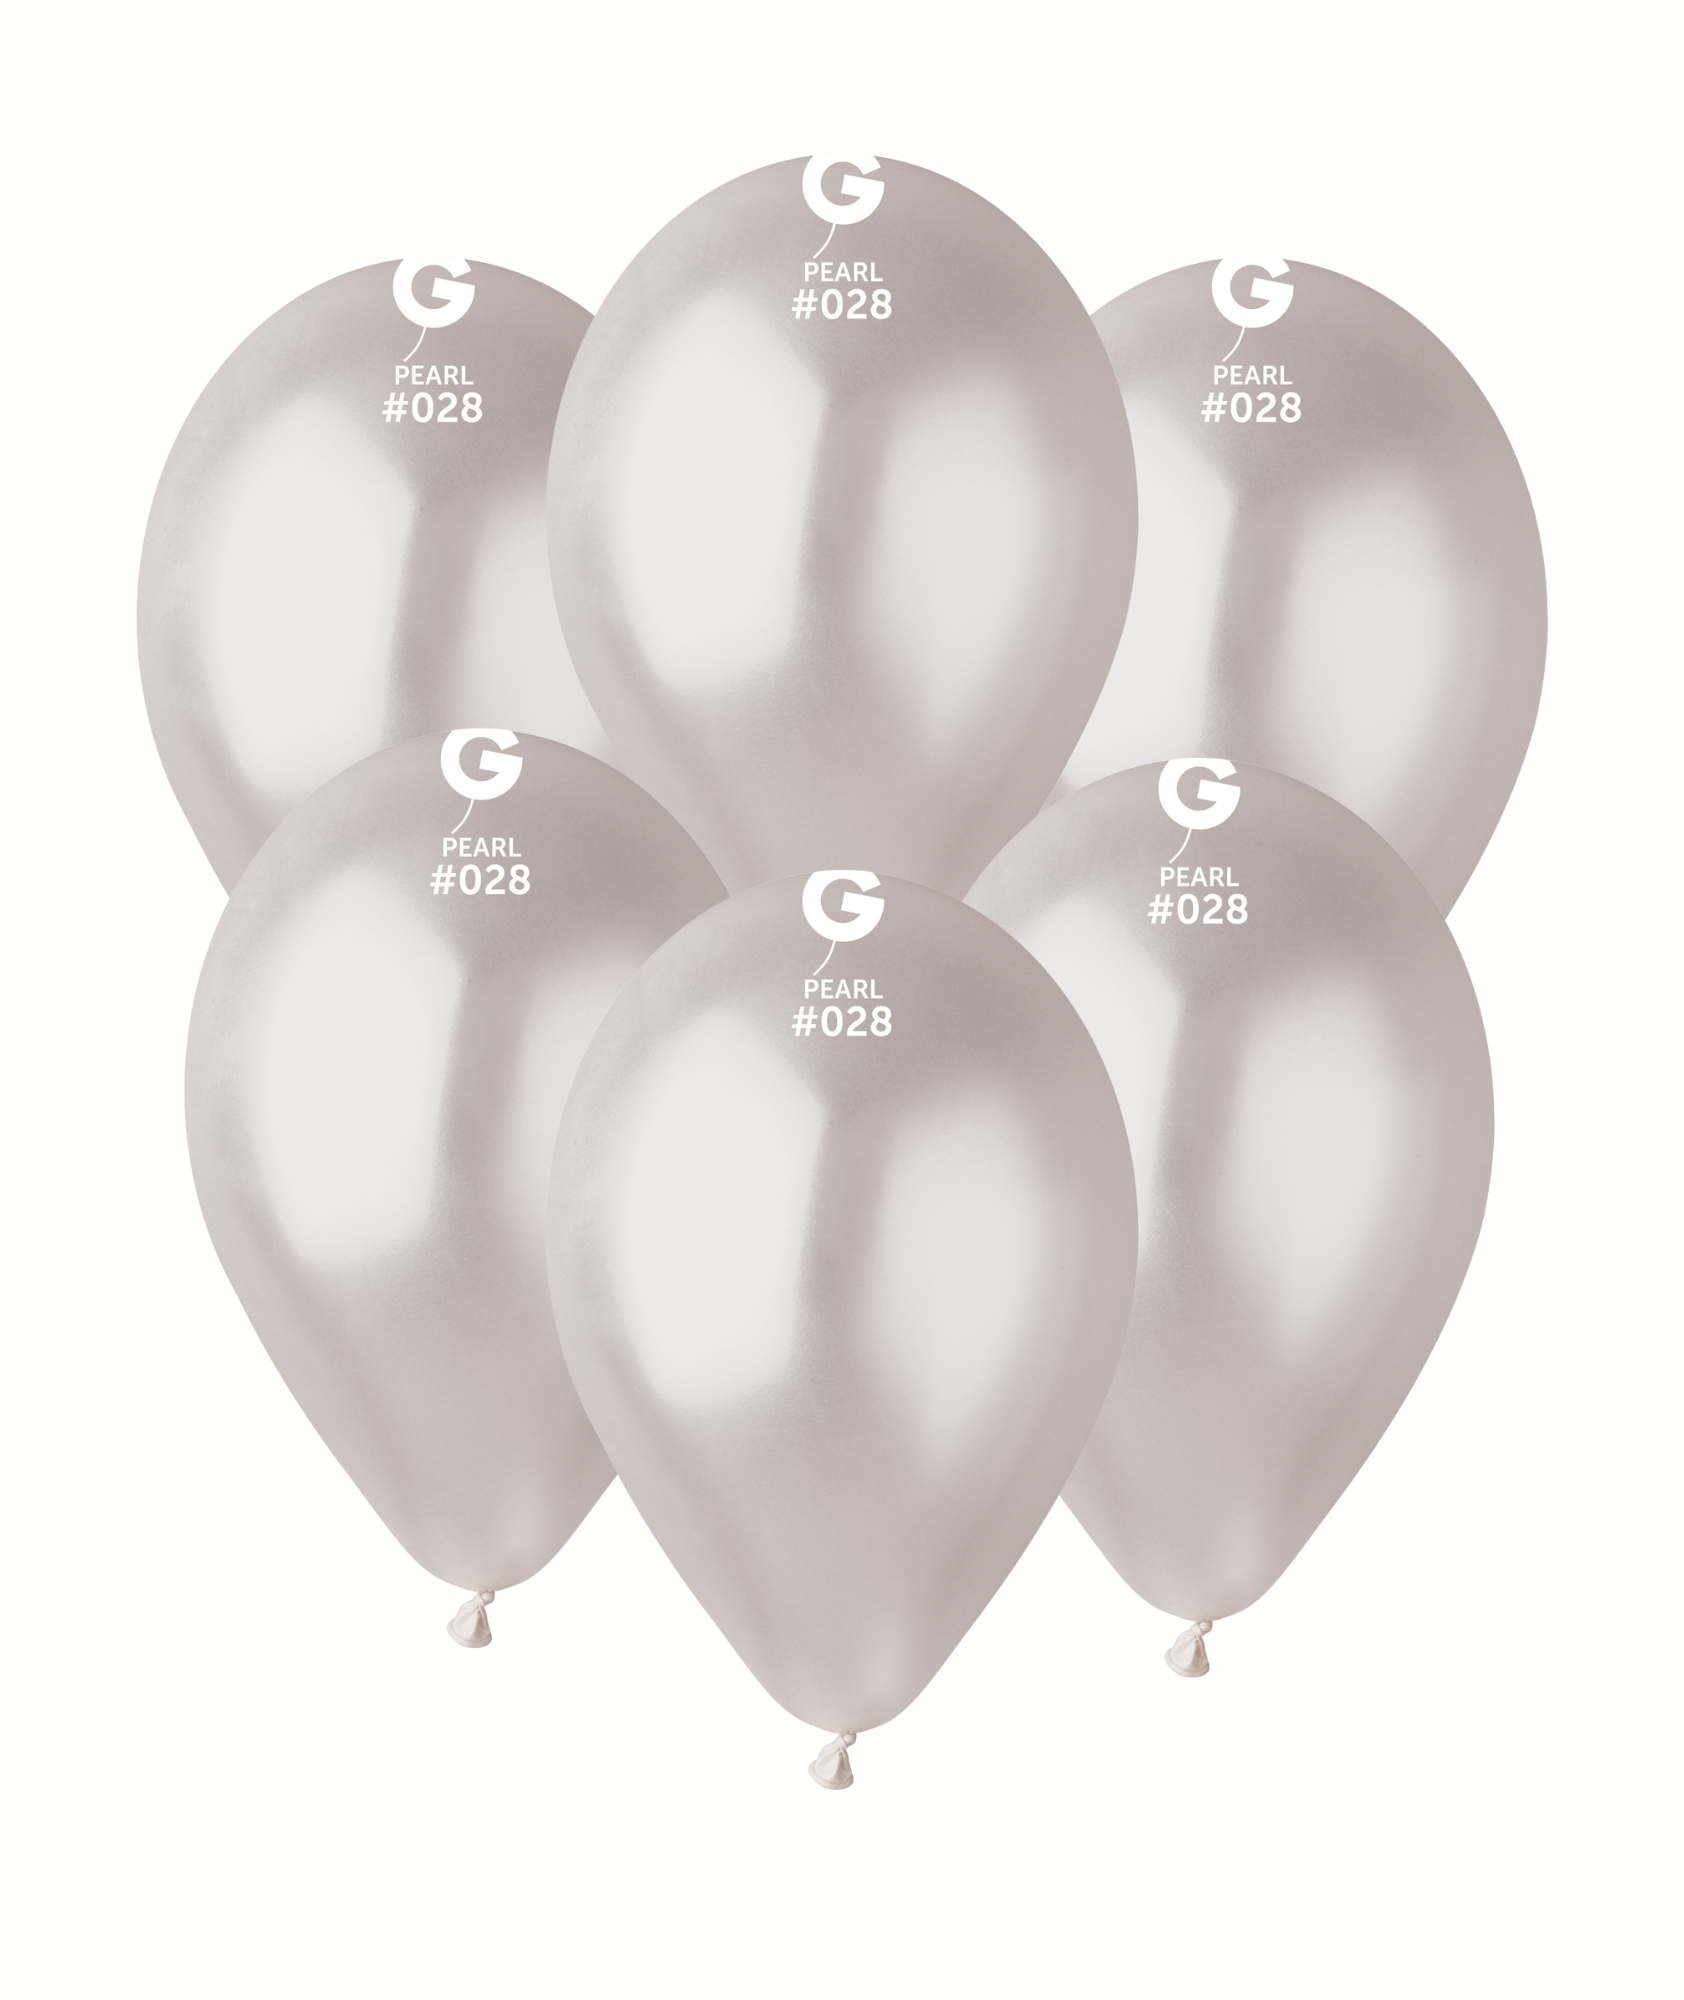 Výhodné balení balónů